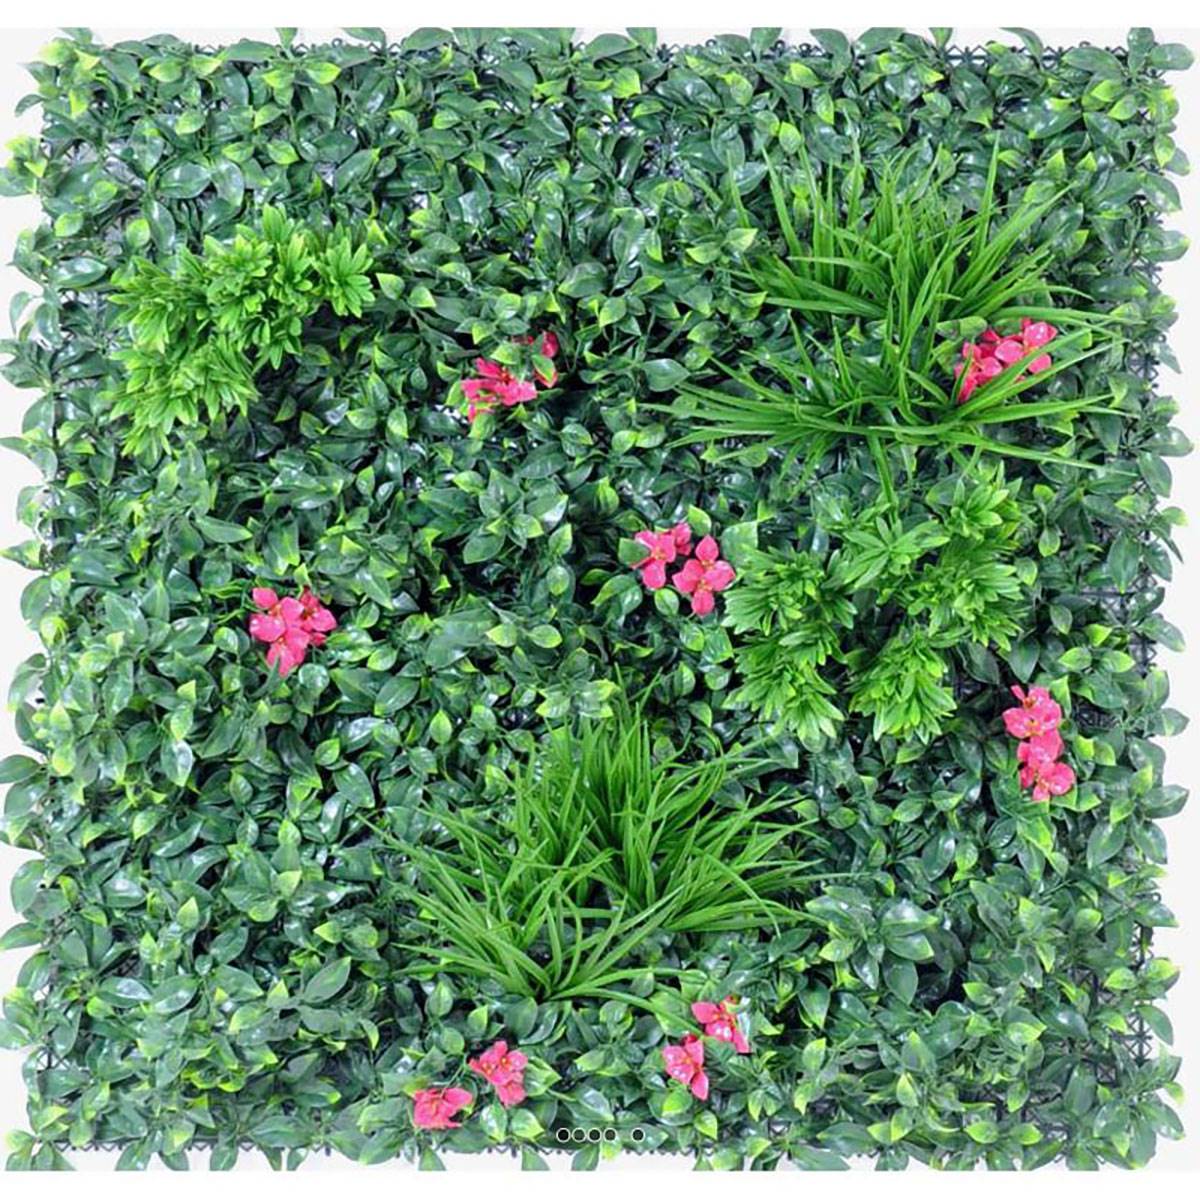 Plaque mur végétal artificiel feuillage & fleurs ext | Artificielles.com